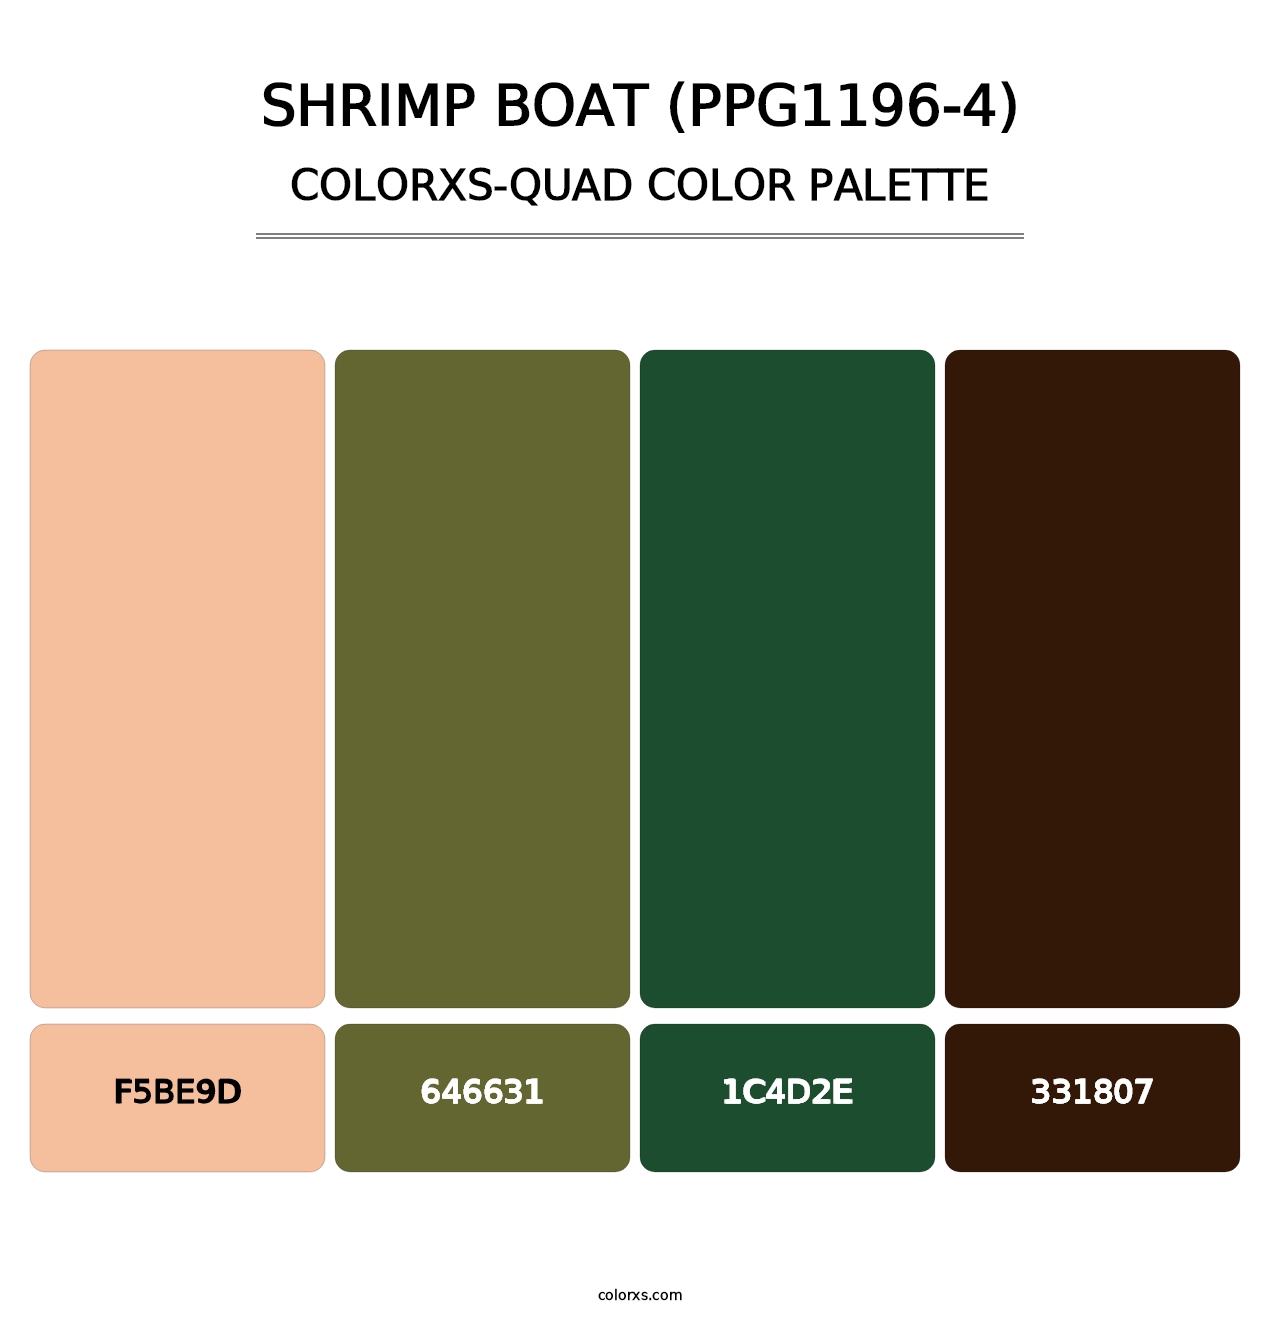 Shrimp Boat (PPG1196-4) - Colorxs Quad Palette